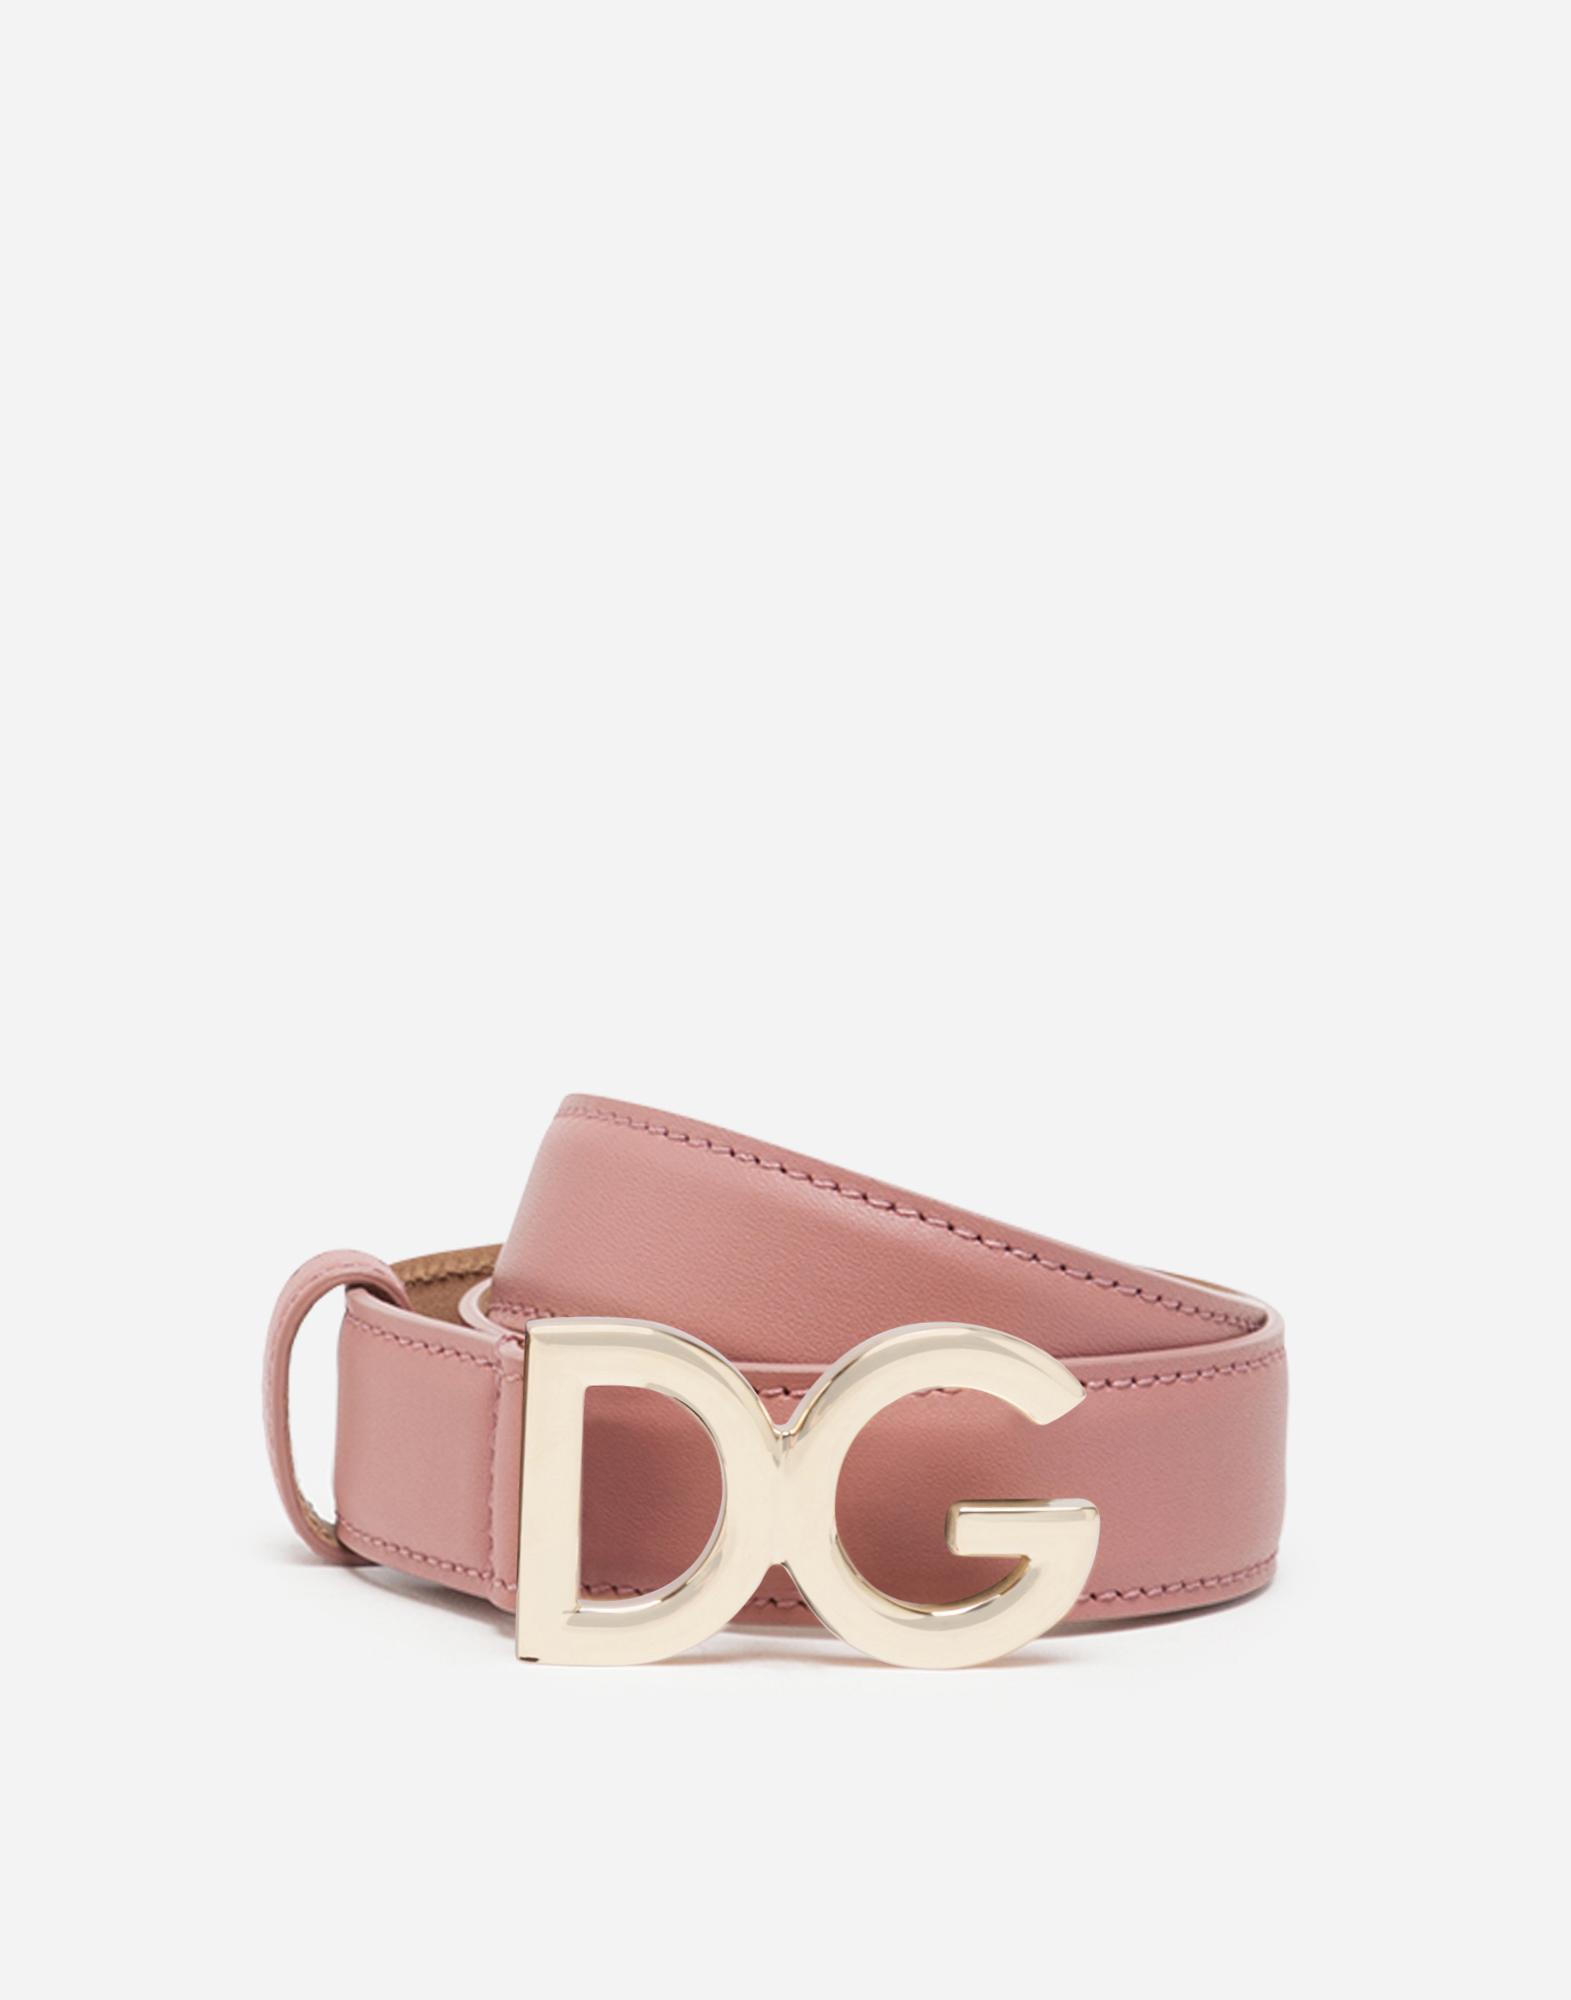 Dolce & Gabbana Dauphine Calfskin Belt